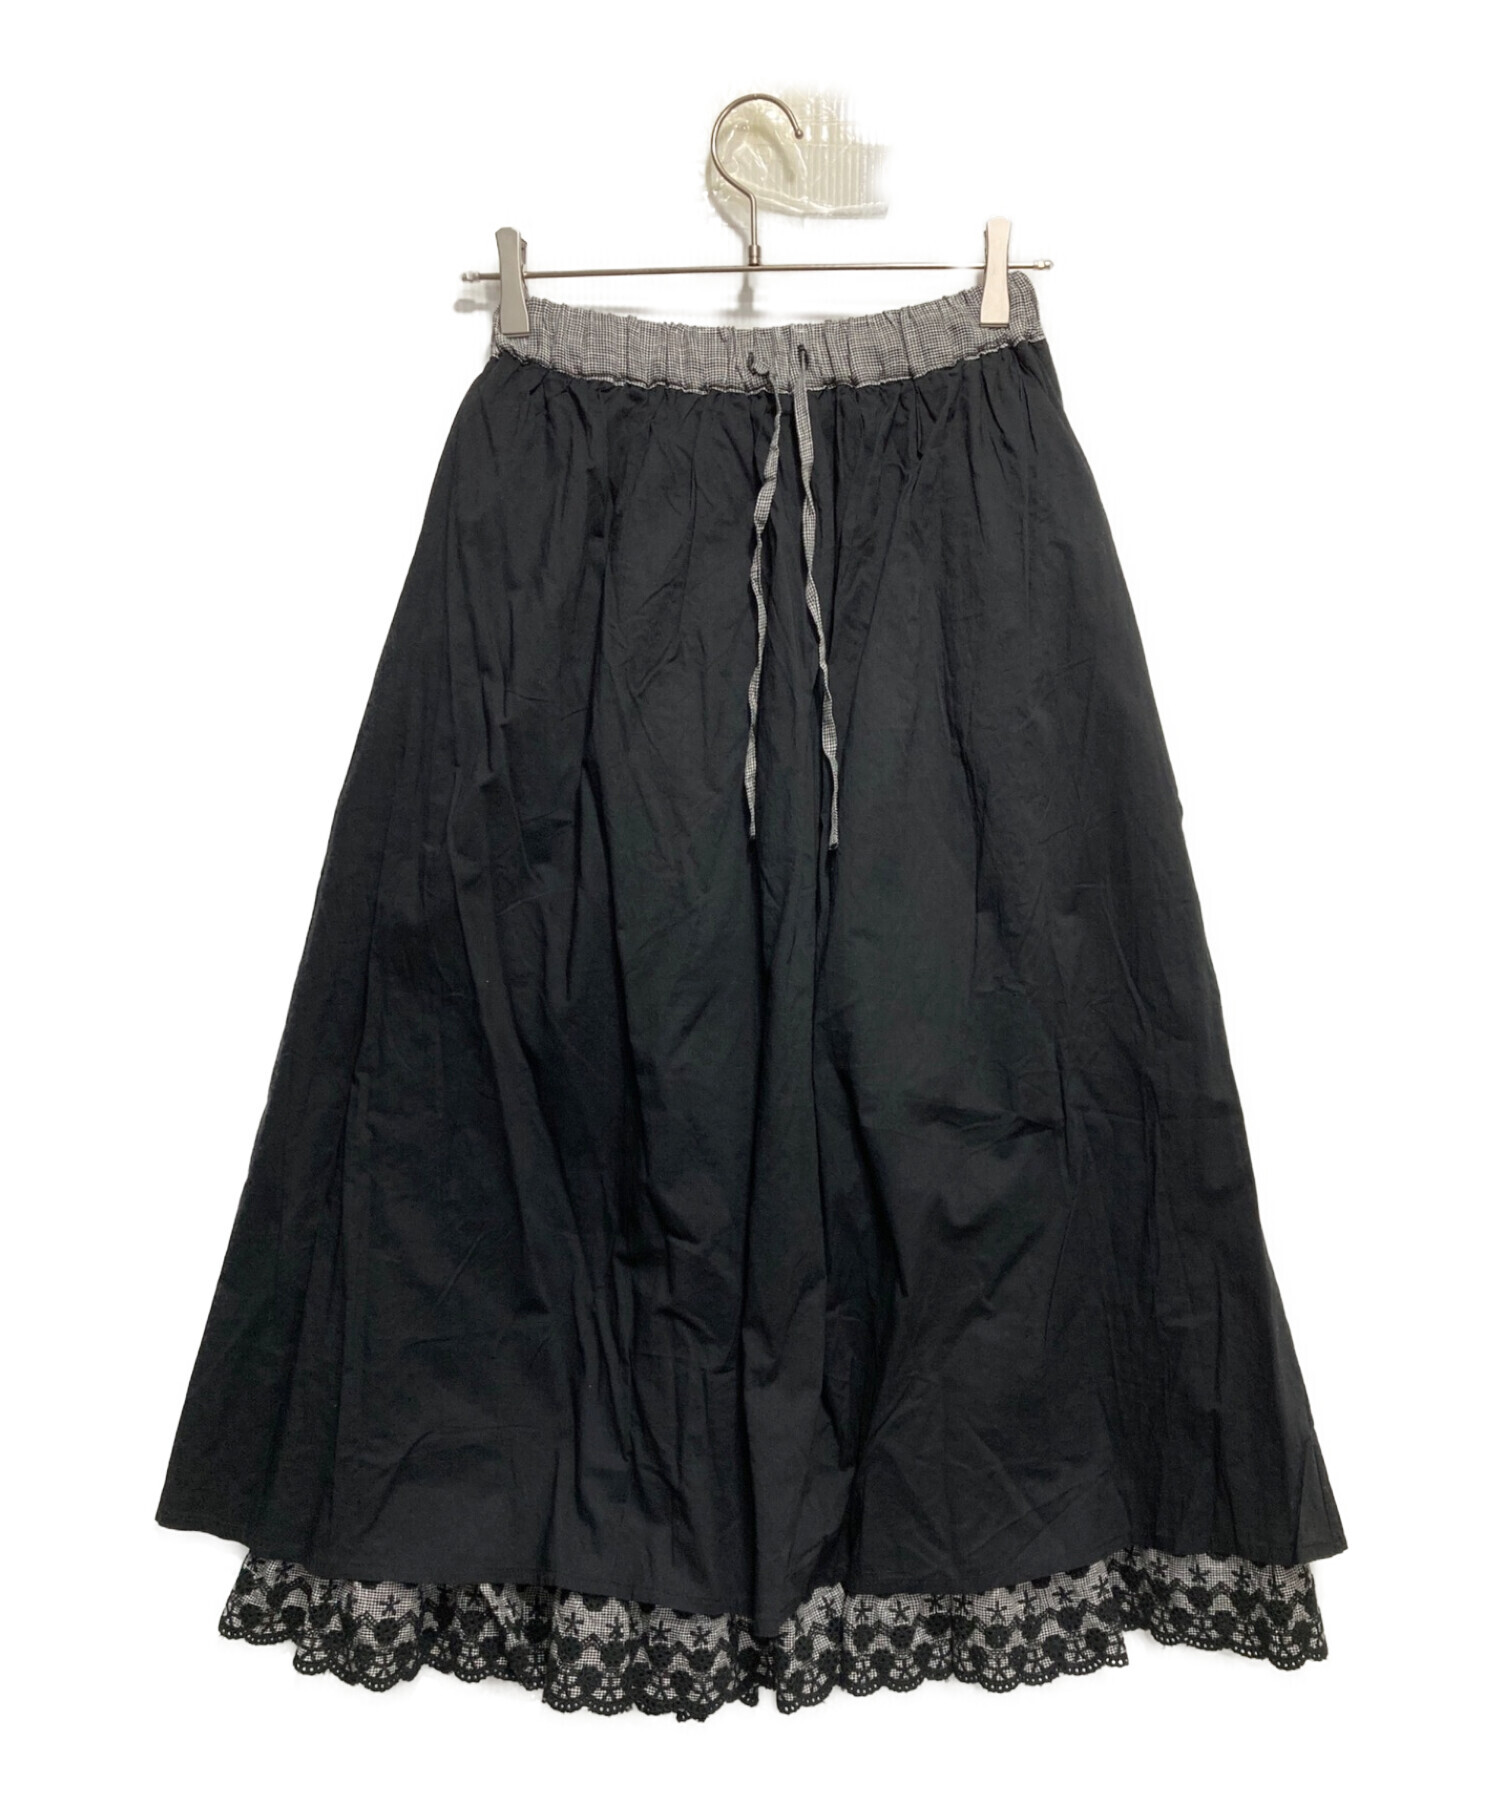 Samansa Mos2 (サマンサモスモス) kazumi (カズミ) 刺繍レース3WAYスカート ブラック サイズ:F 未使用品